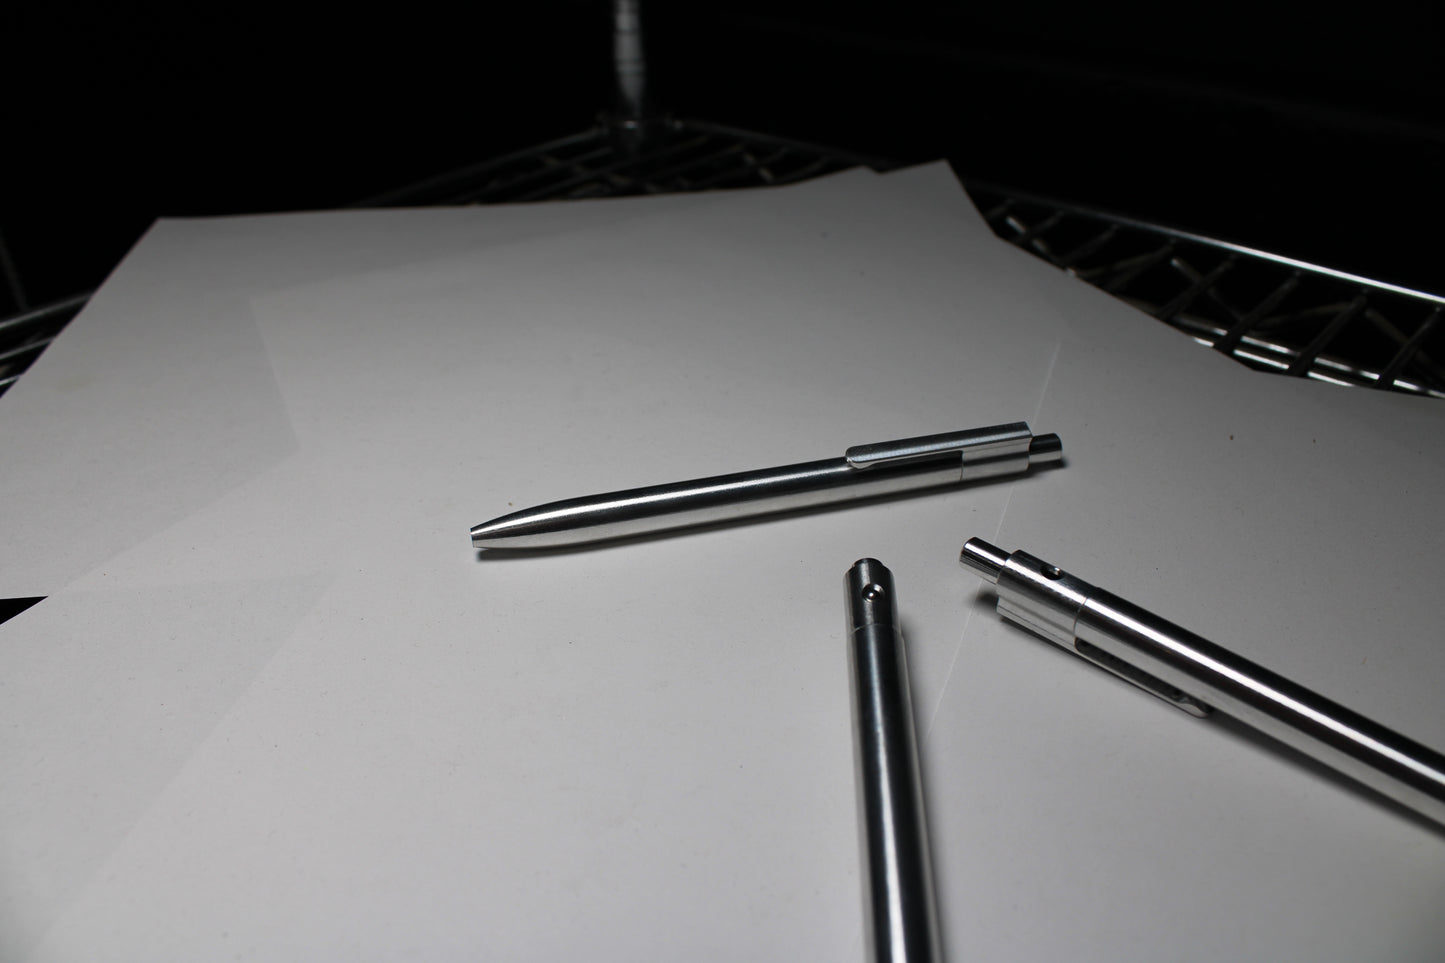 36 Click Pen -  6061 Aluminum - Round Nose - Schmidt 9000 M ISO G2 (Parker)